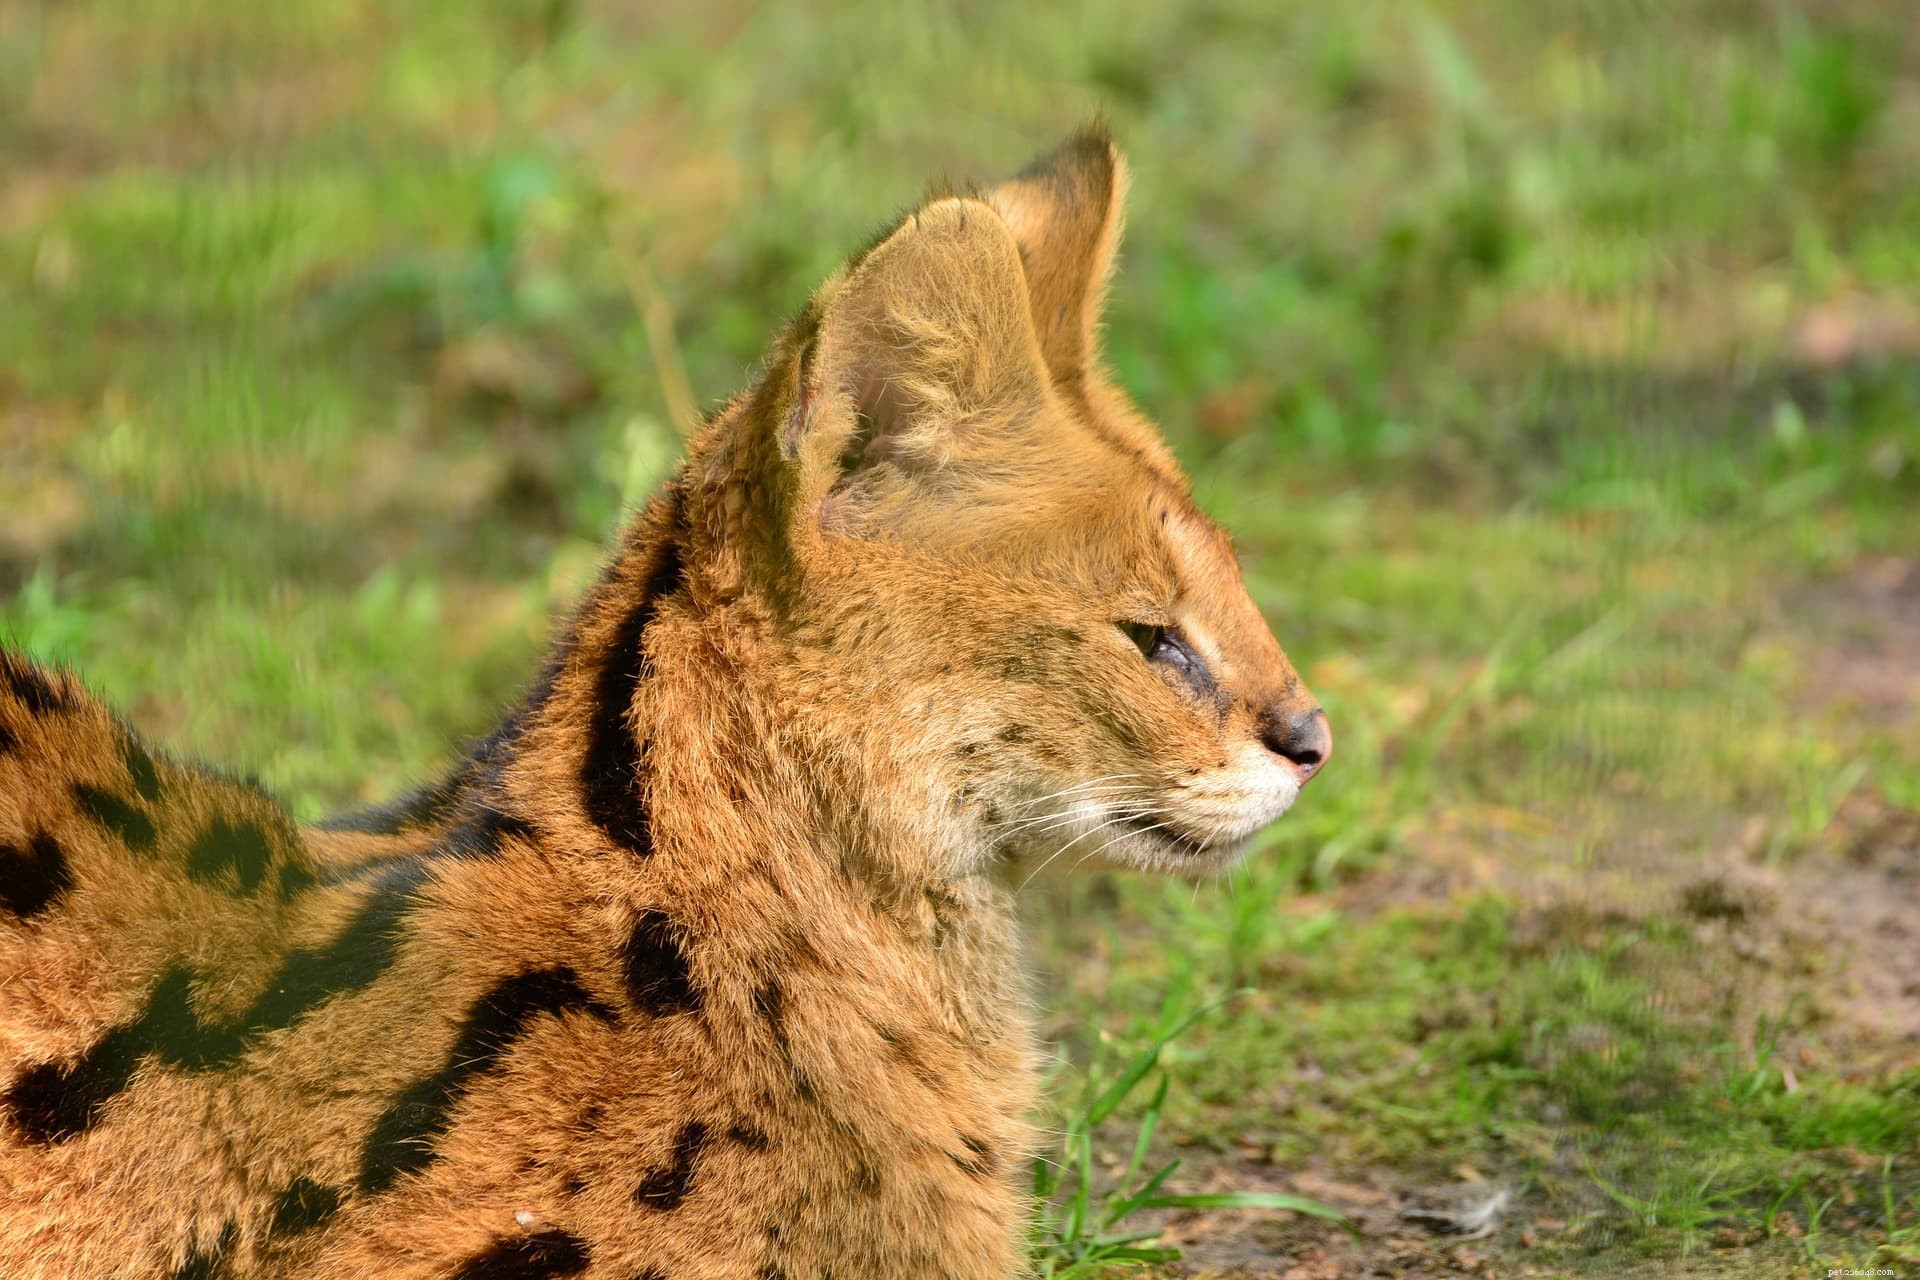 Os gatos Serval são bons animais de estimação? O que você precisa saber!